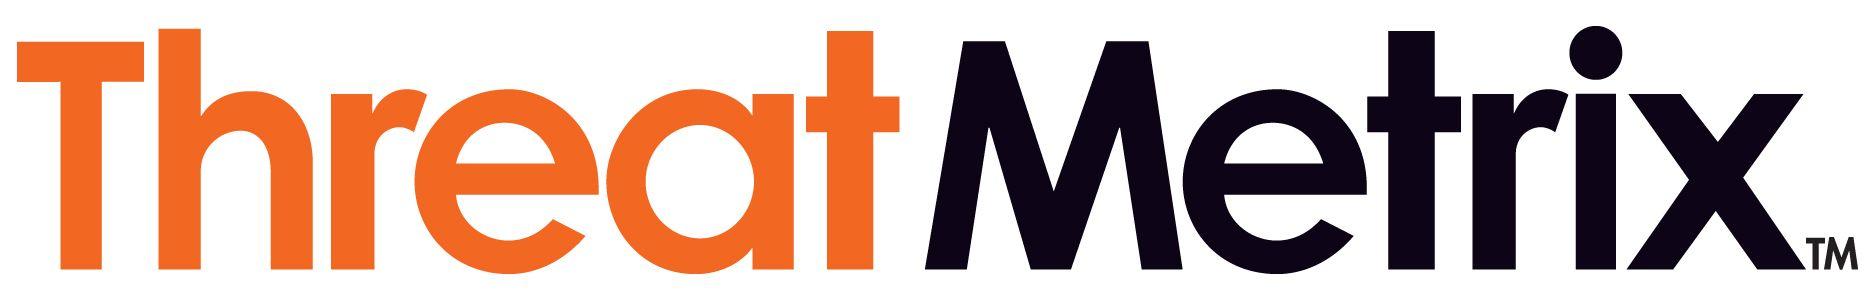 ThreatMetrix Logo - ThreatMetrix-logo - New Venture Institute